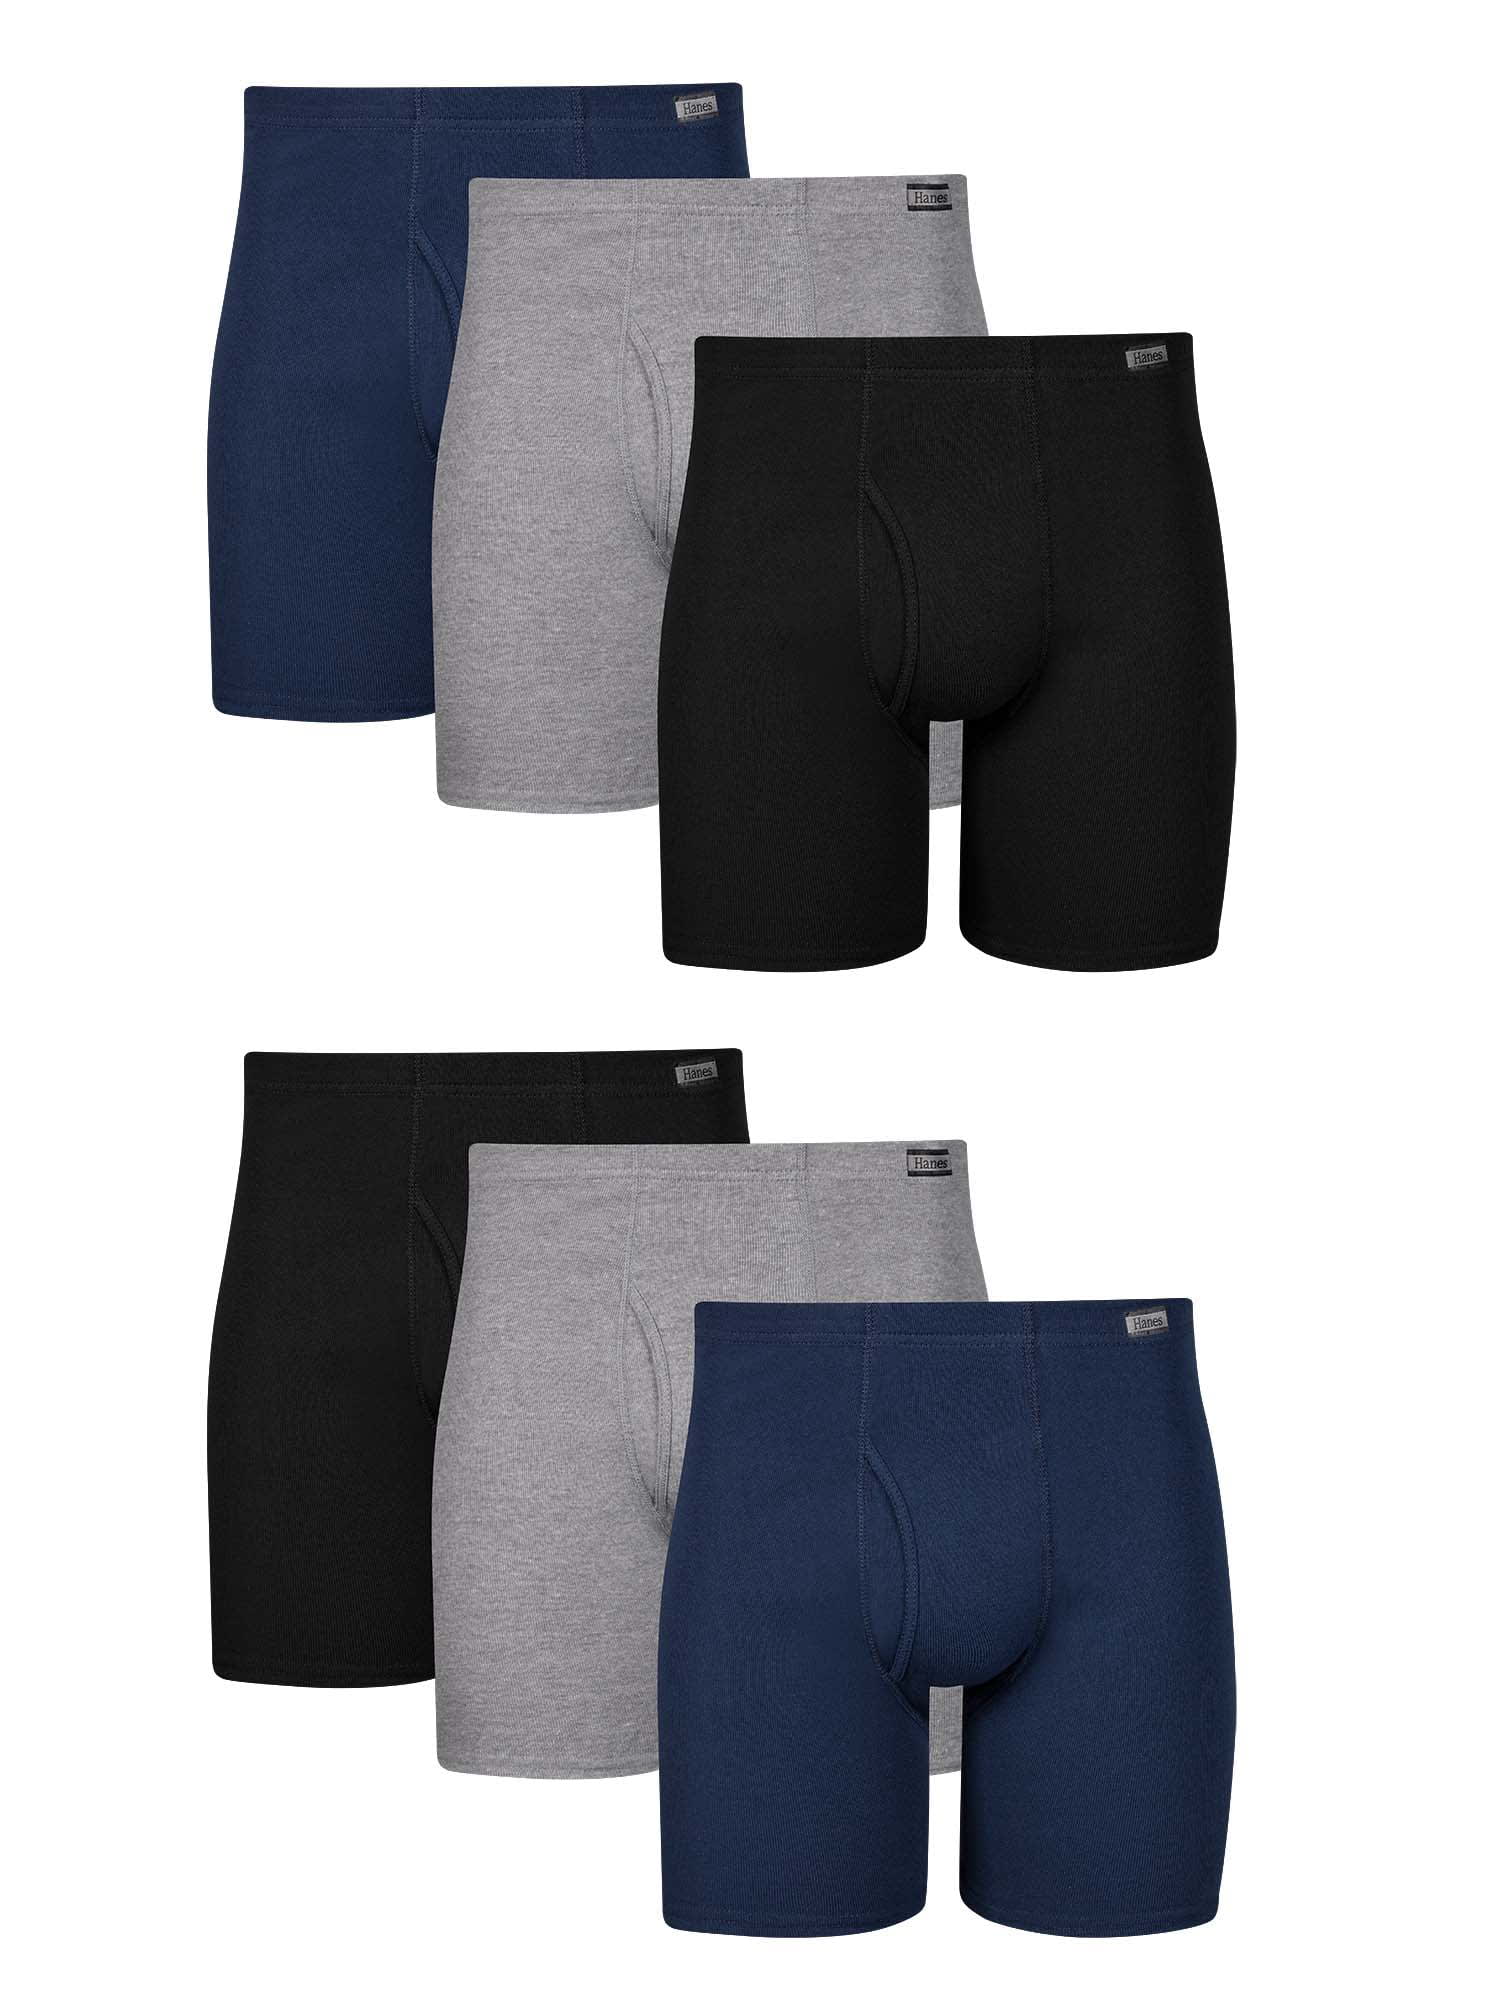 Hanes Men's Comfort Flex Fit Total Support Pouch Long Leg Boxer Briefs, 3  Pack